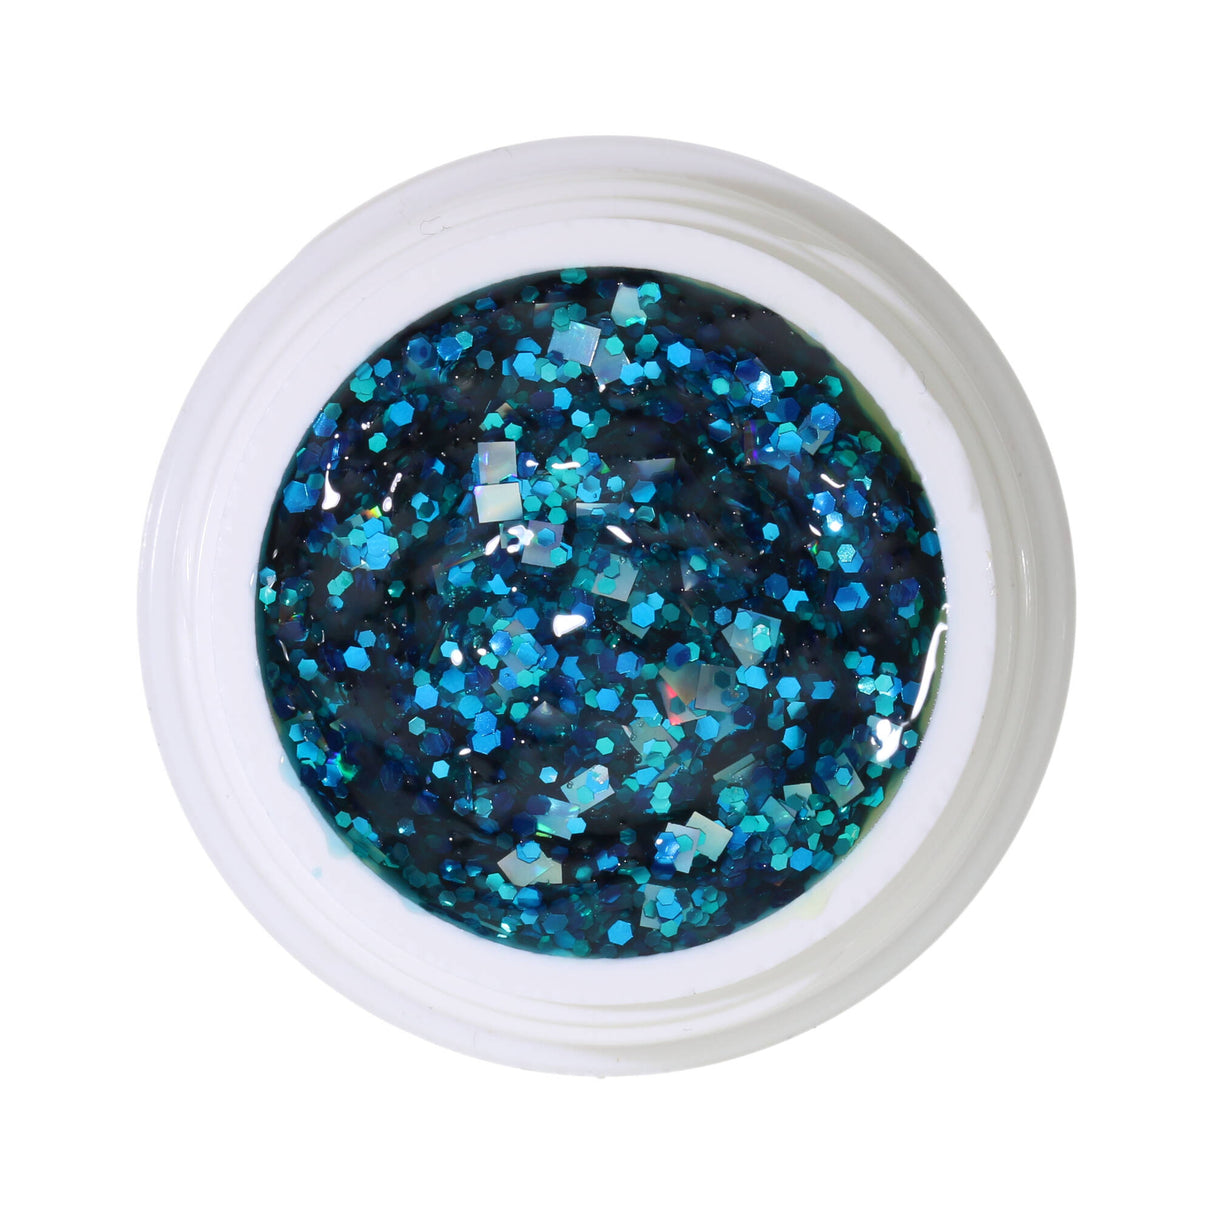 # 380 Premium-GLITTER Color Gel 5ml Gel lấp lánh màu bạc với điểm nhấn màu xanh ngọc